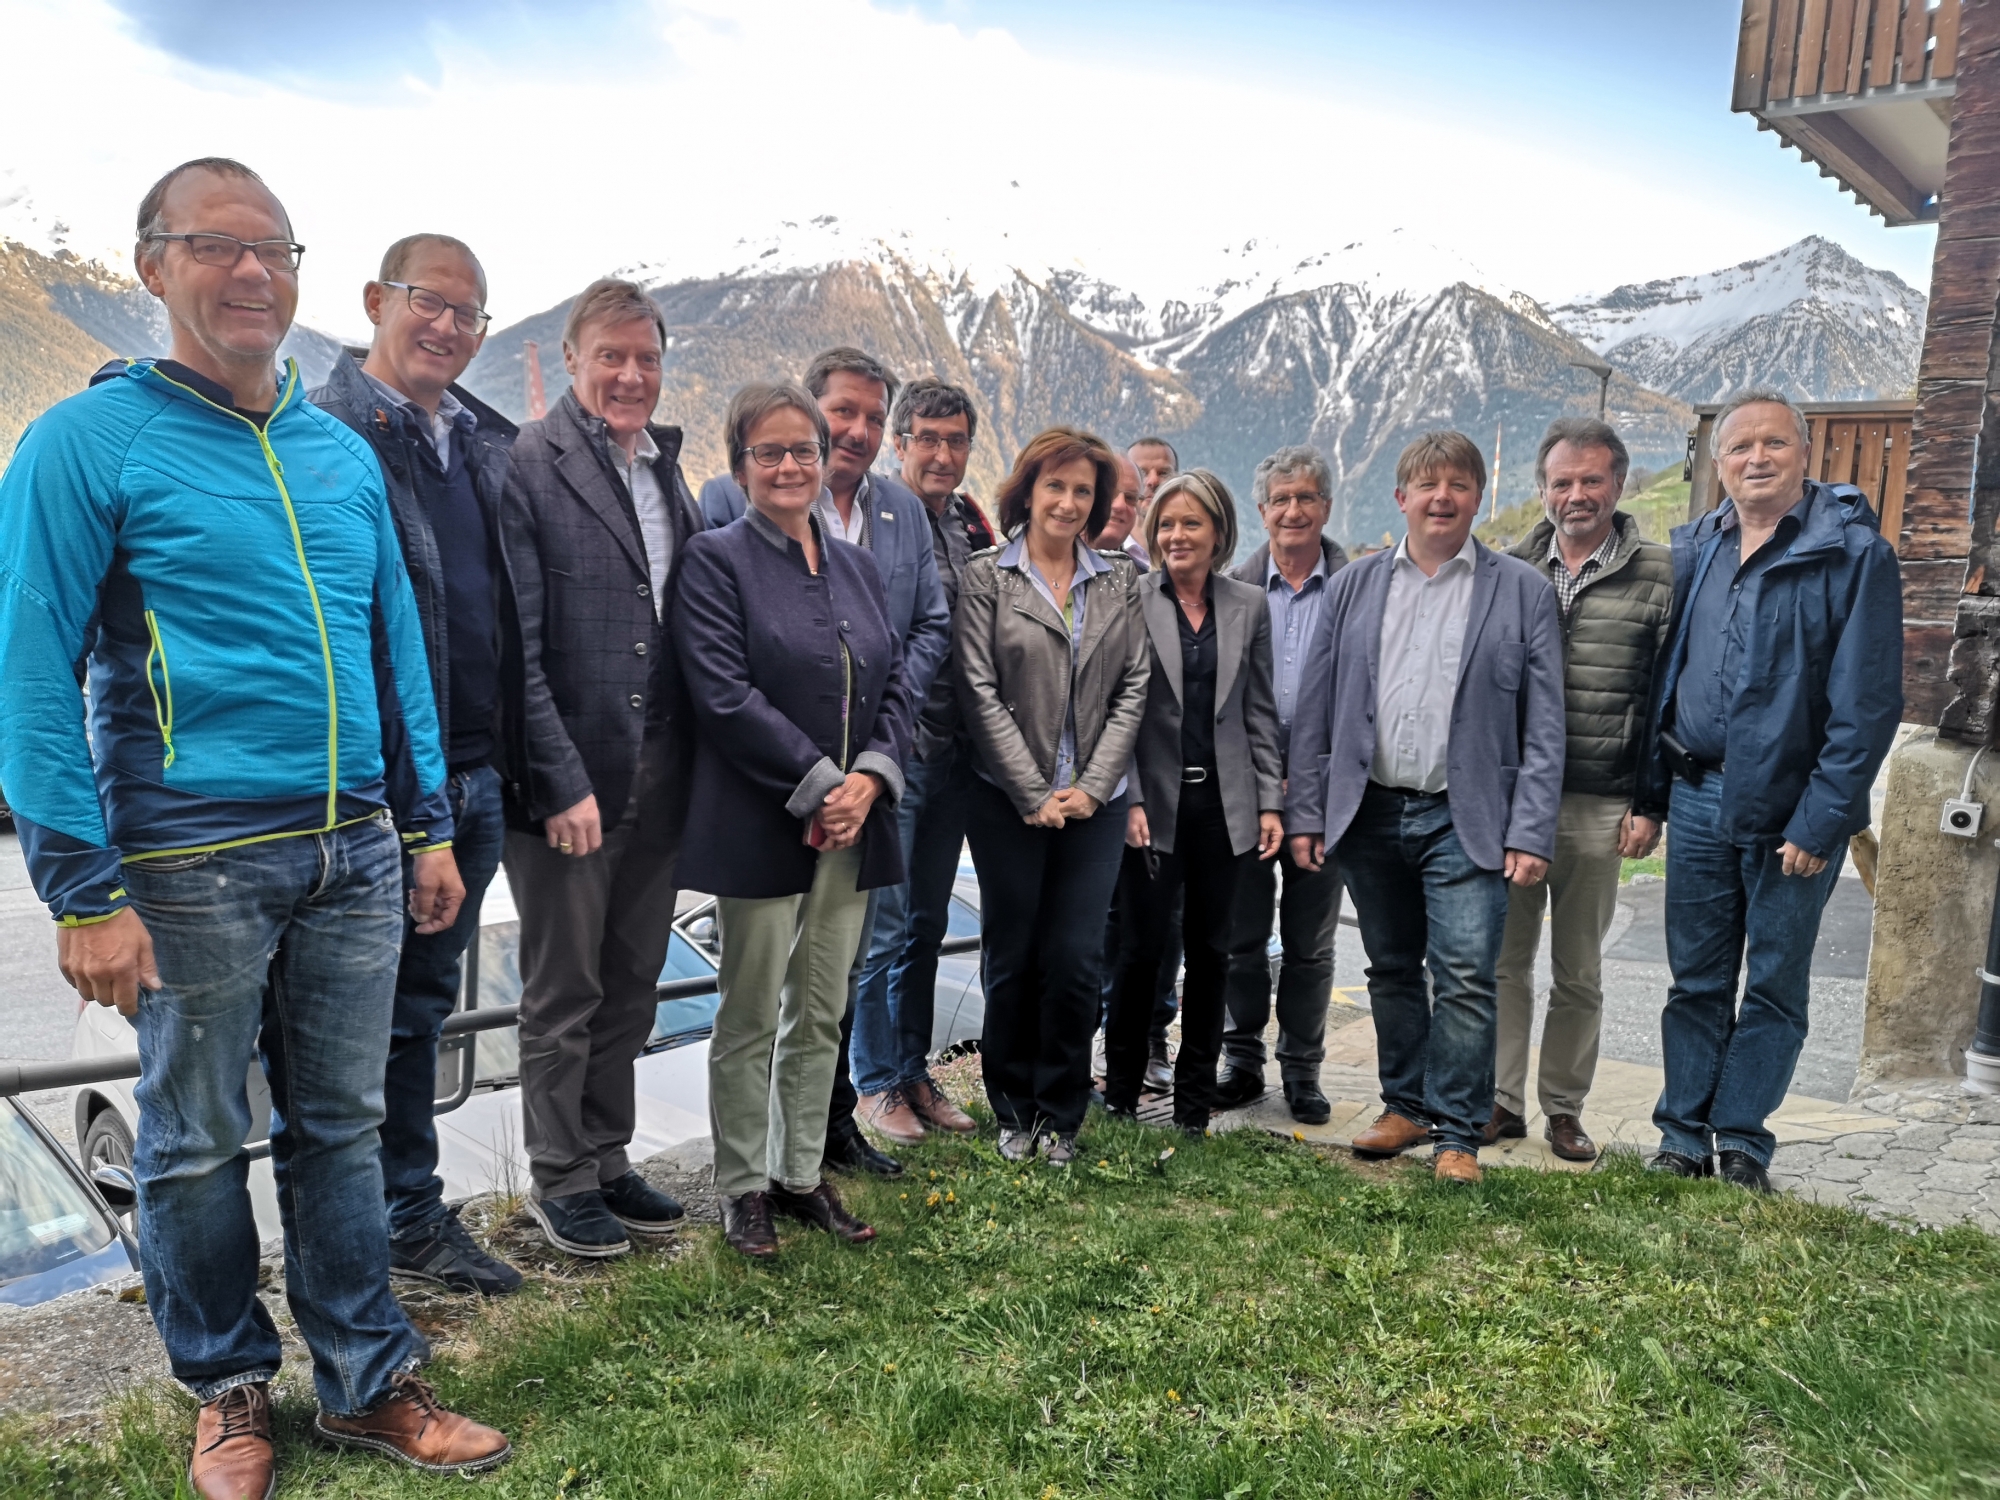 Les comités du Réseau des communes de montagne du Haut-Valais et du Groupement de la population de montagne du Valais romand se sont rencontrés pour lancer leur collaboration.